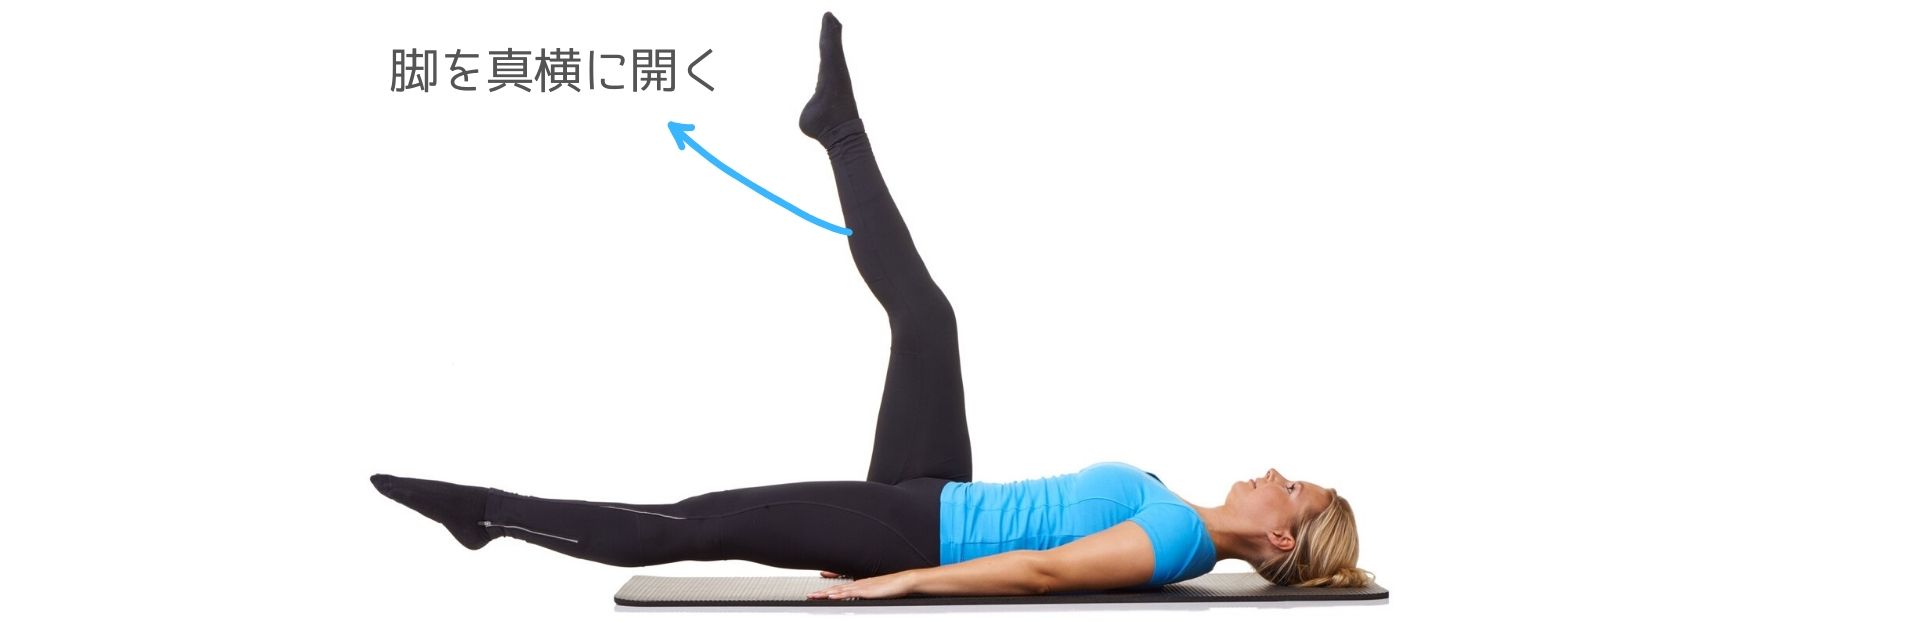 股関節群の筋肉を鍛える 簡単エクササイズ5種目 トレーニング スポーツ Melos